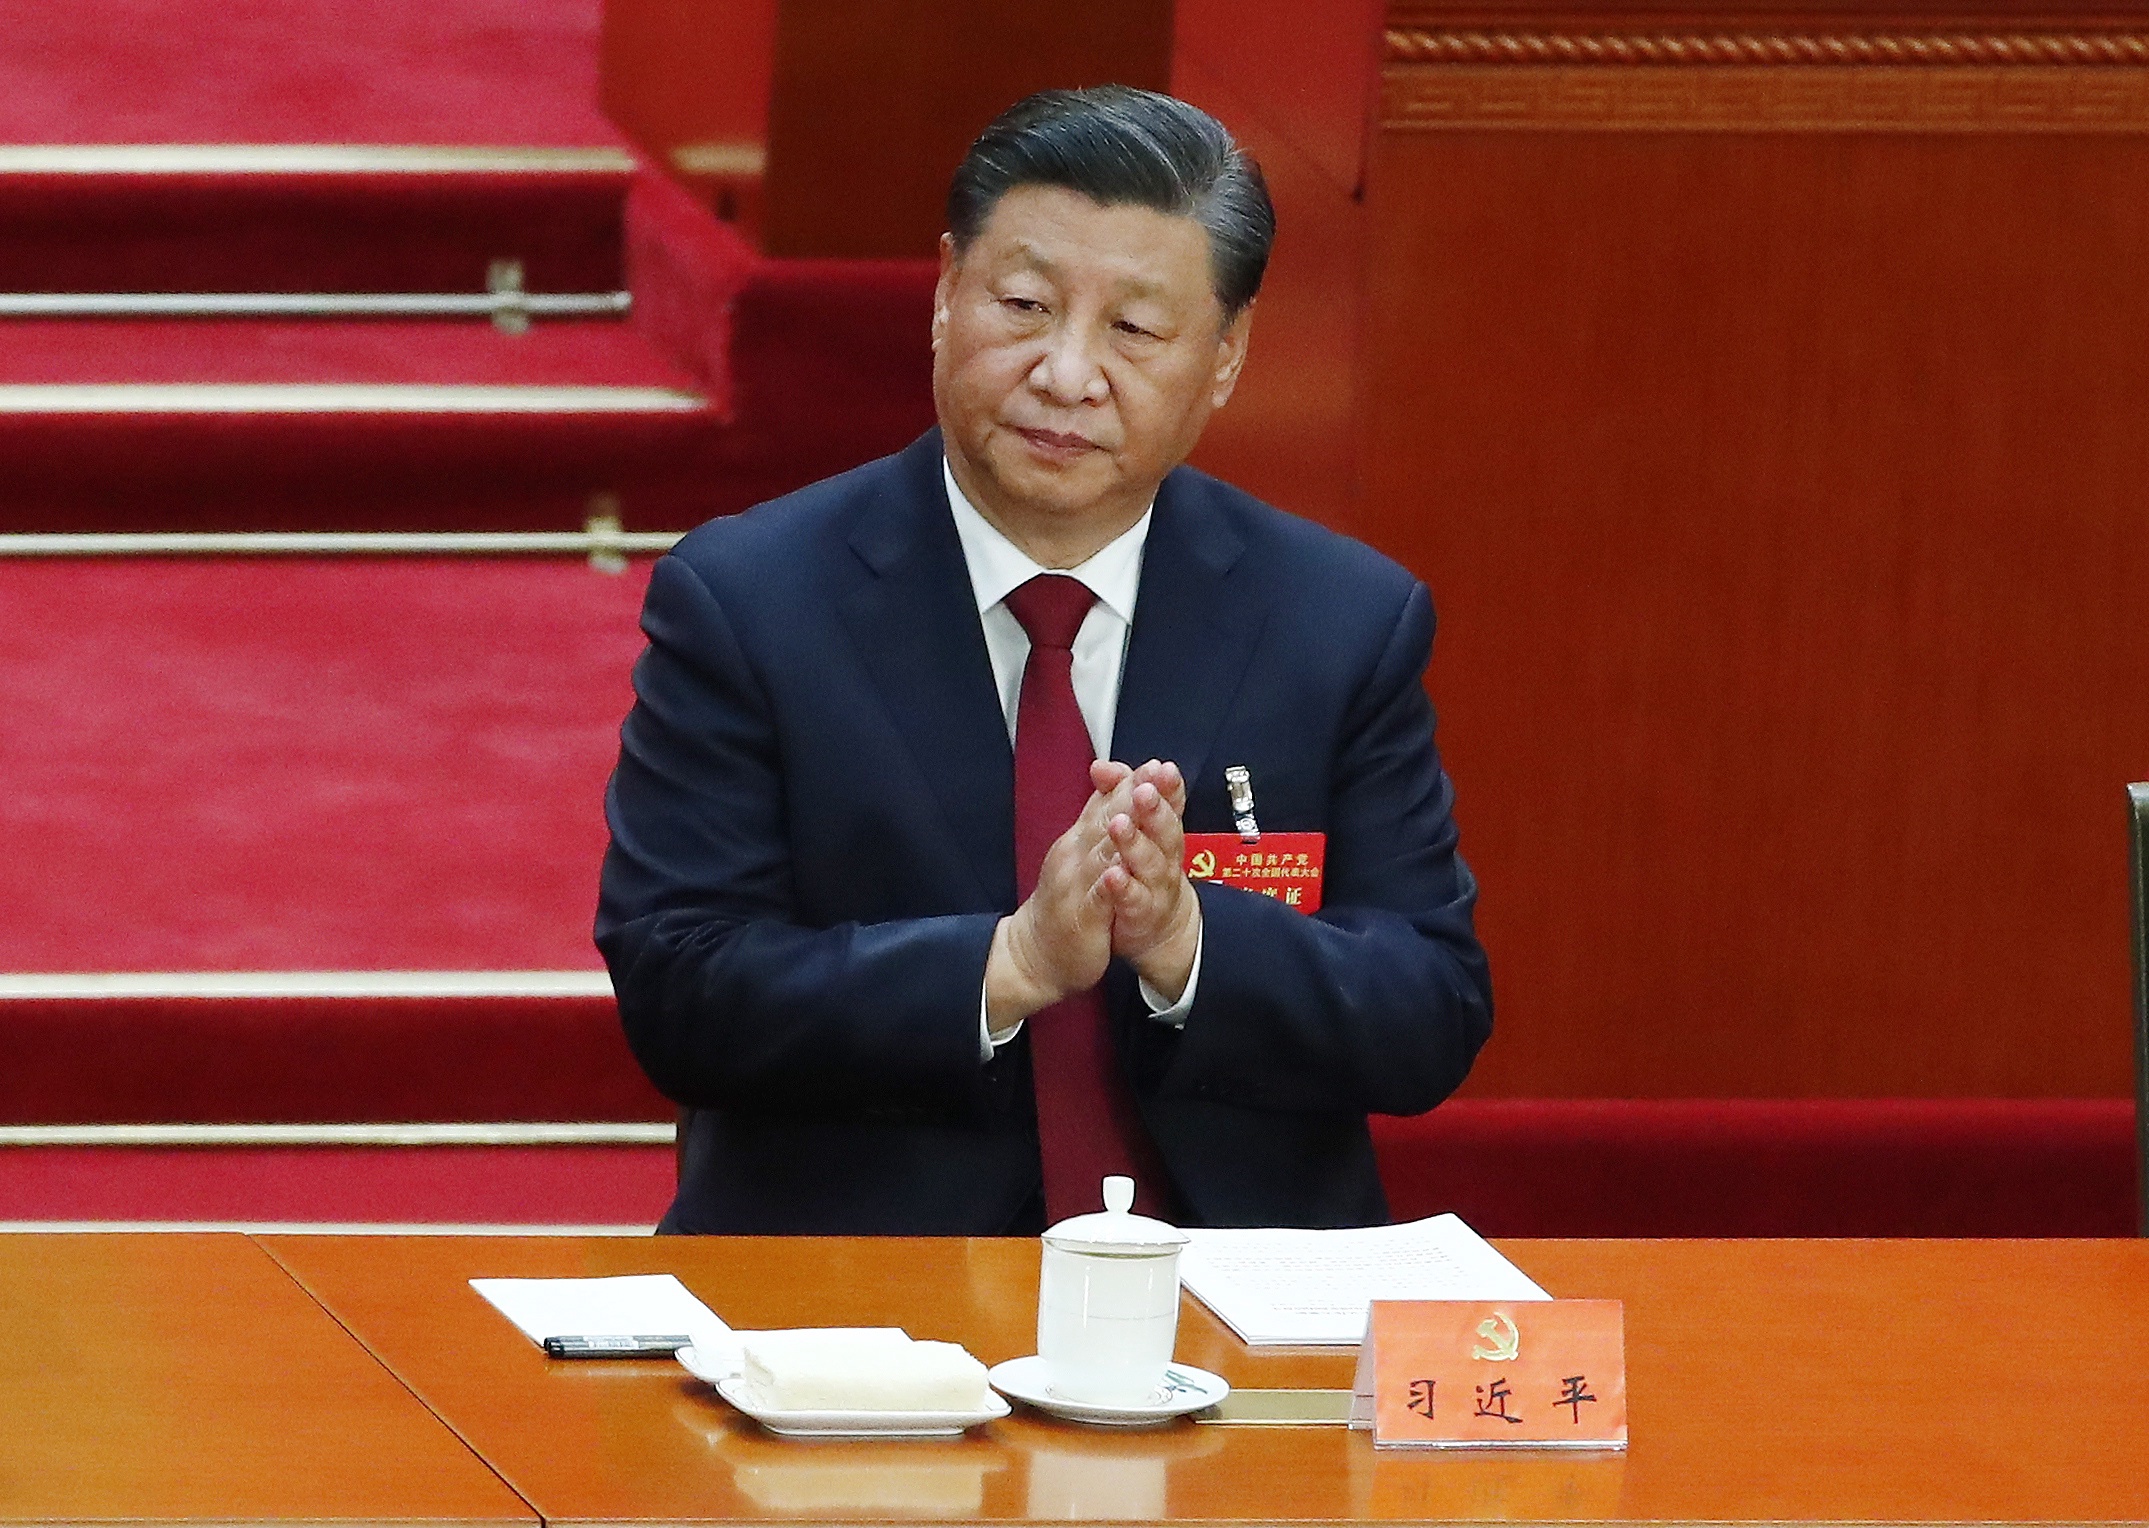 De Chinese president Xi Jinping tijdens de opening van het partijcongres van de Communistische Partij.